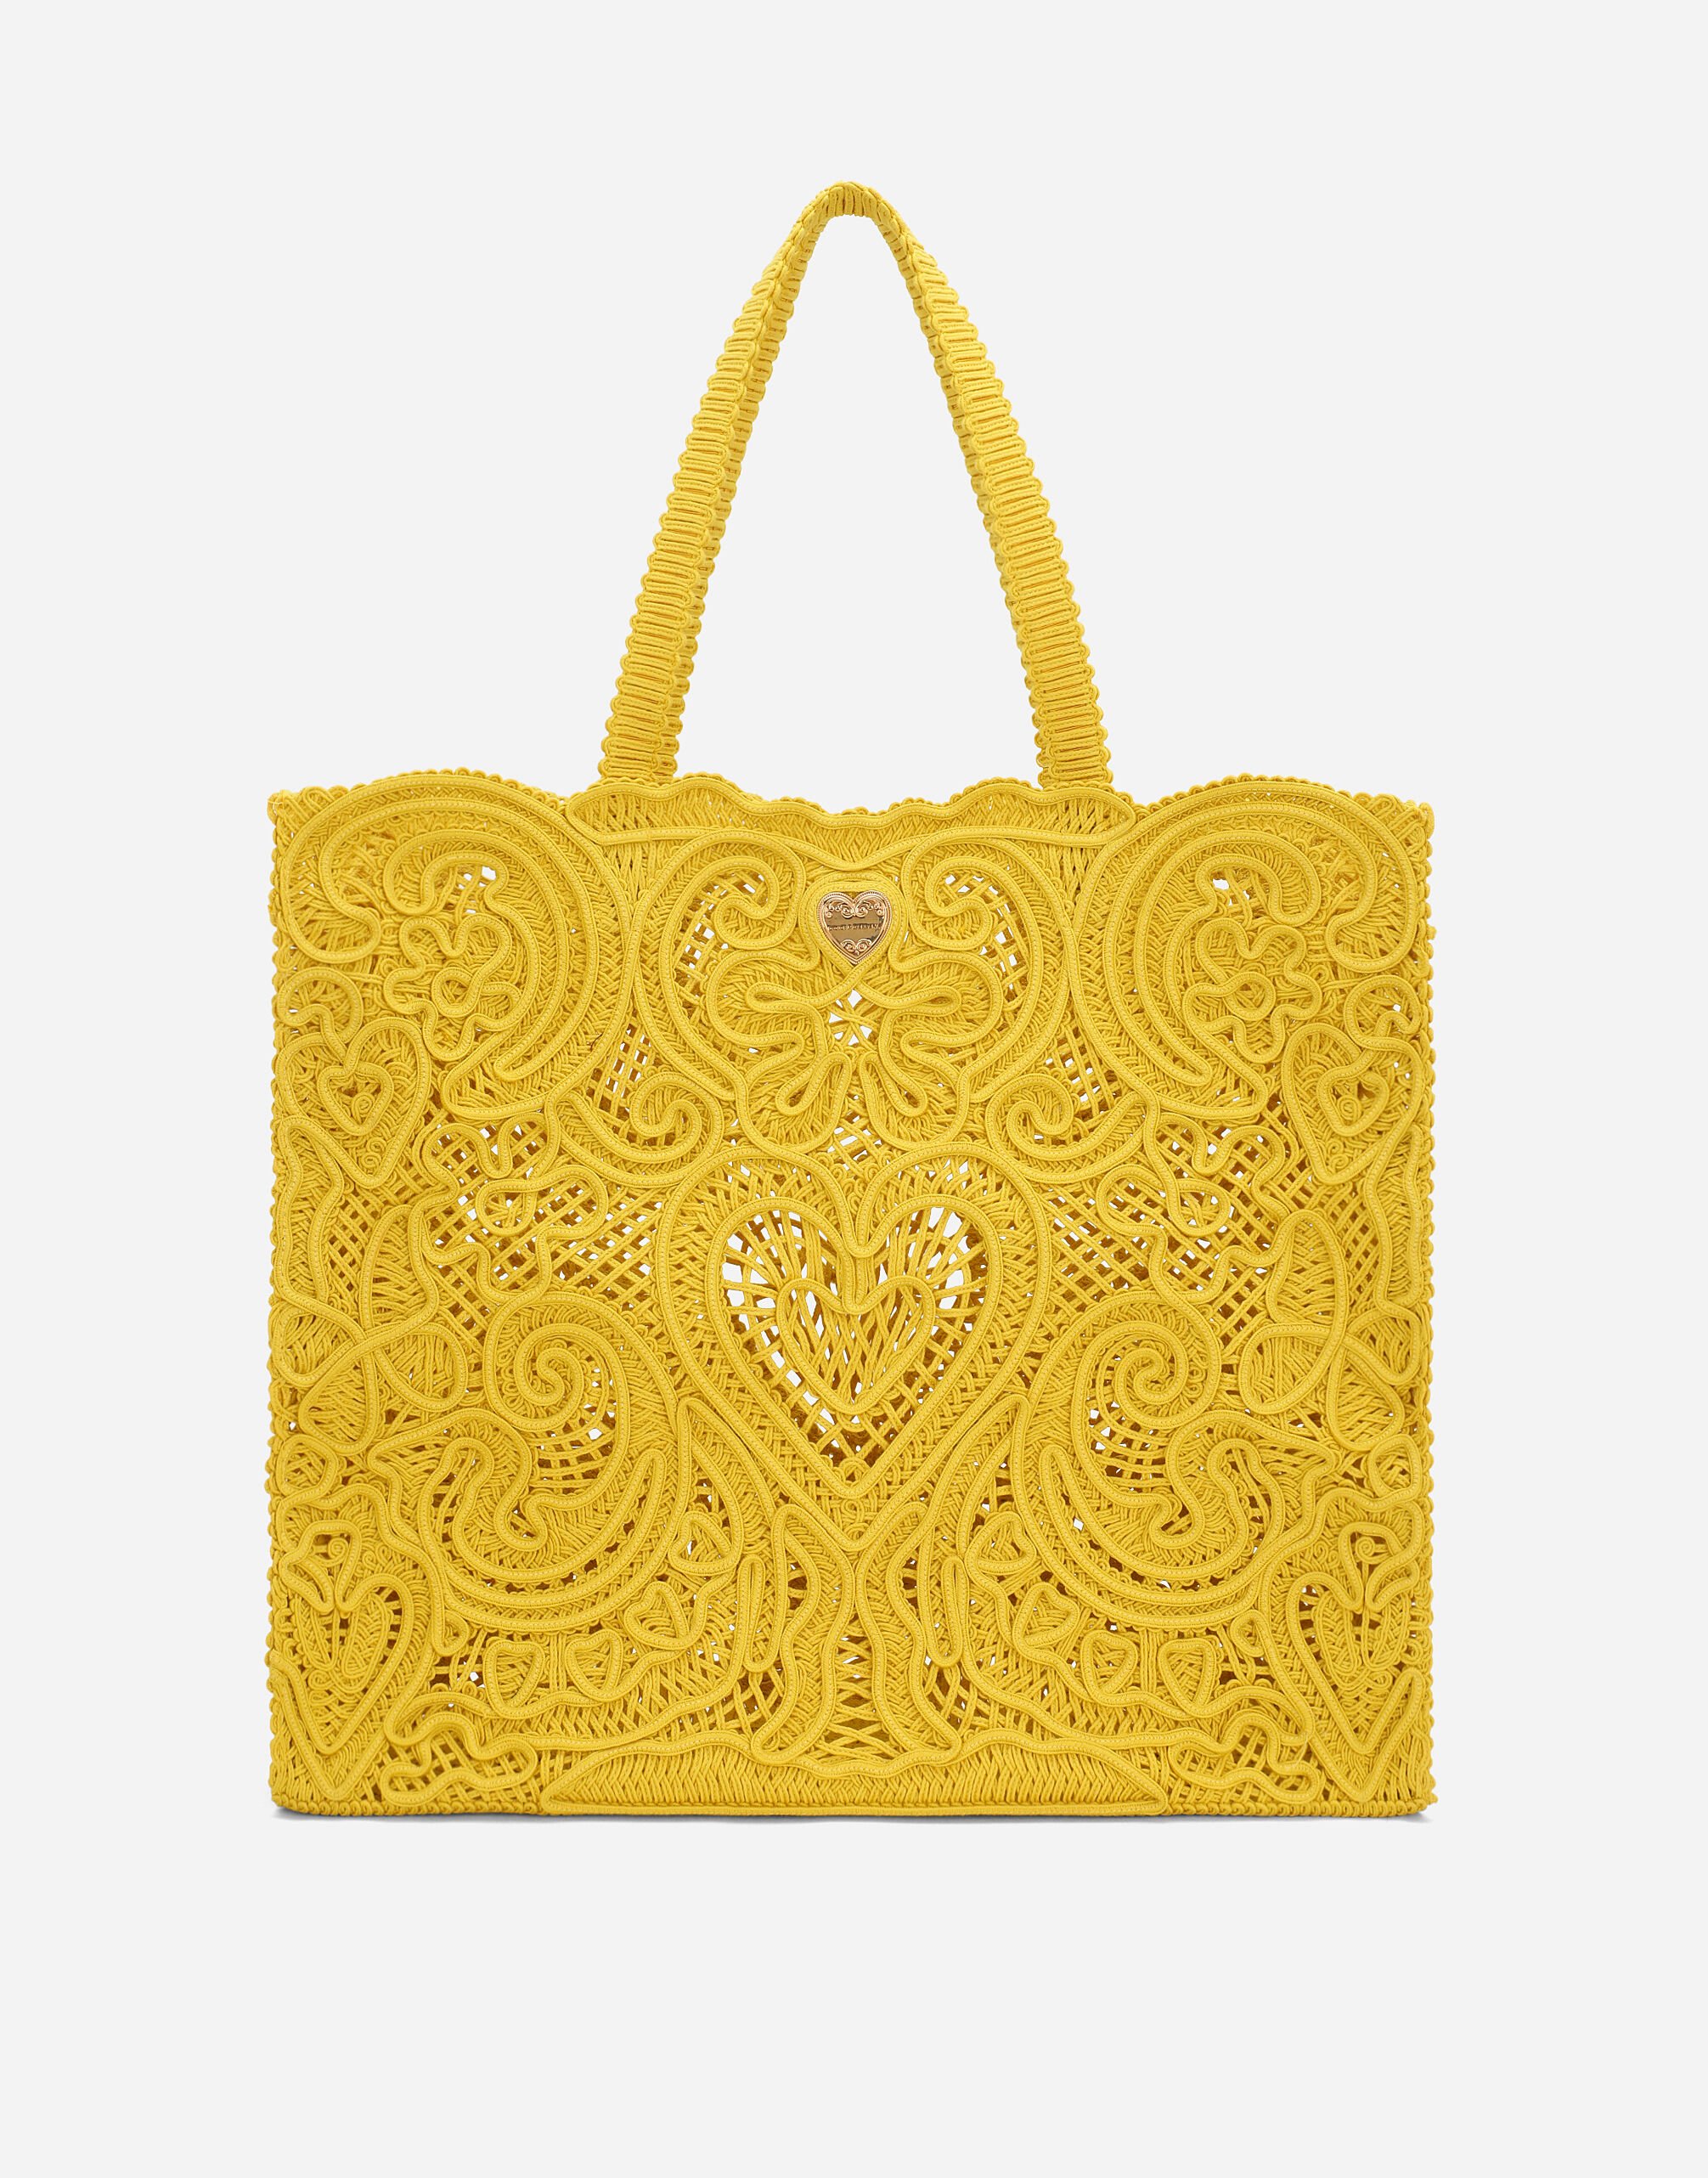 Dolce & Gabbana حقيبة تسوق بياتريس كبيرة متعدد الألوان BB7270AR355